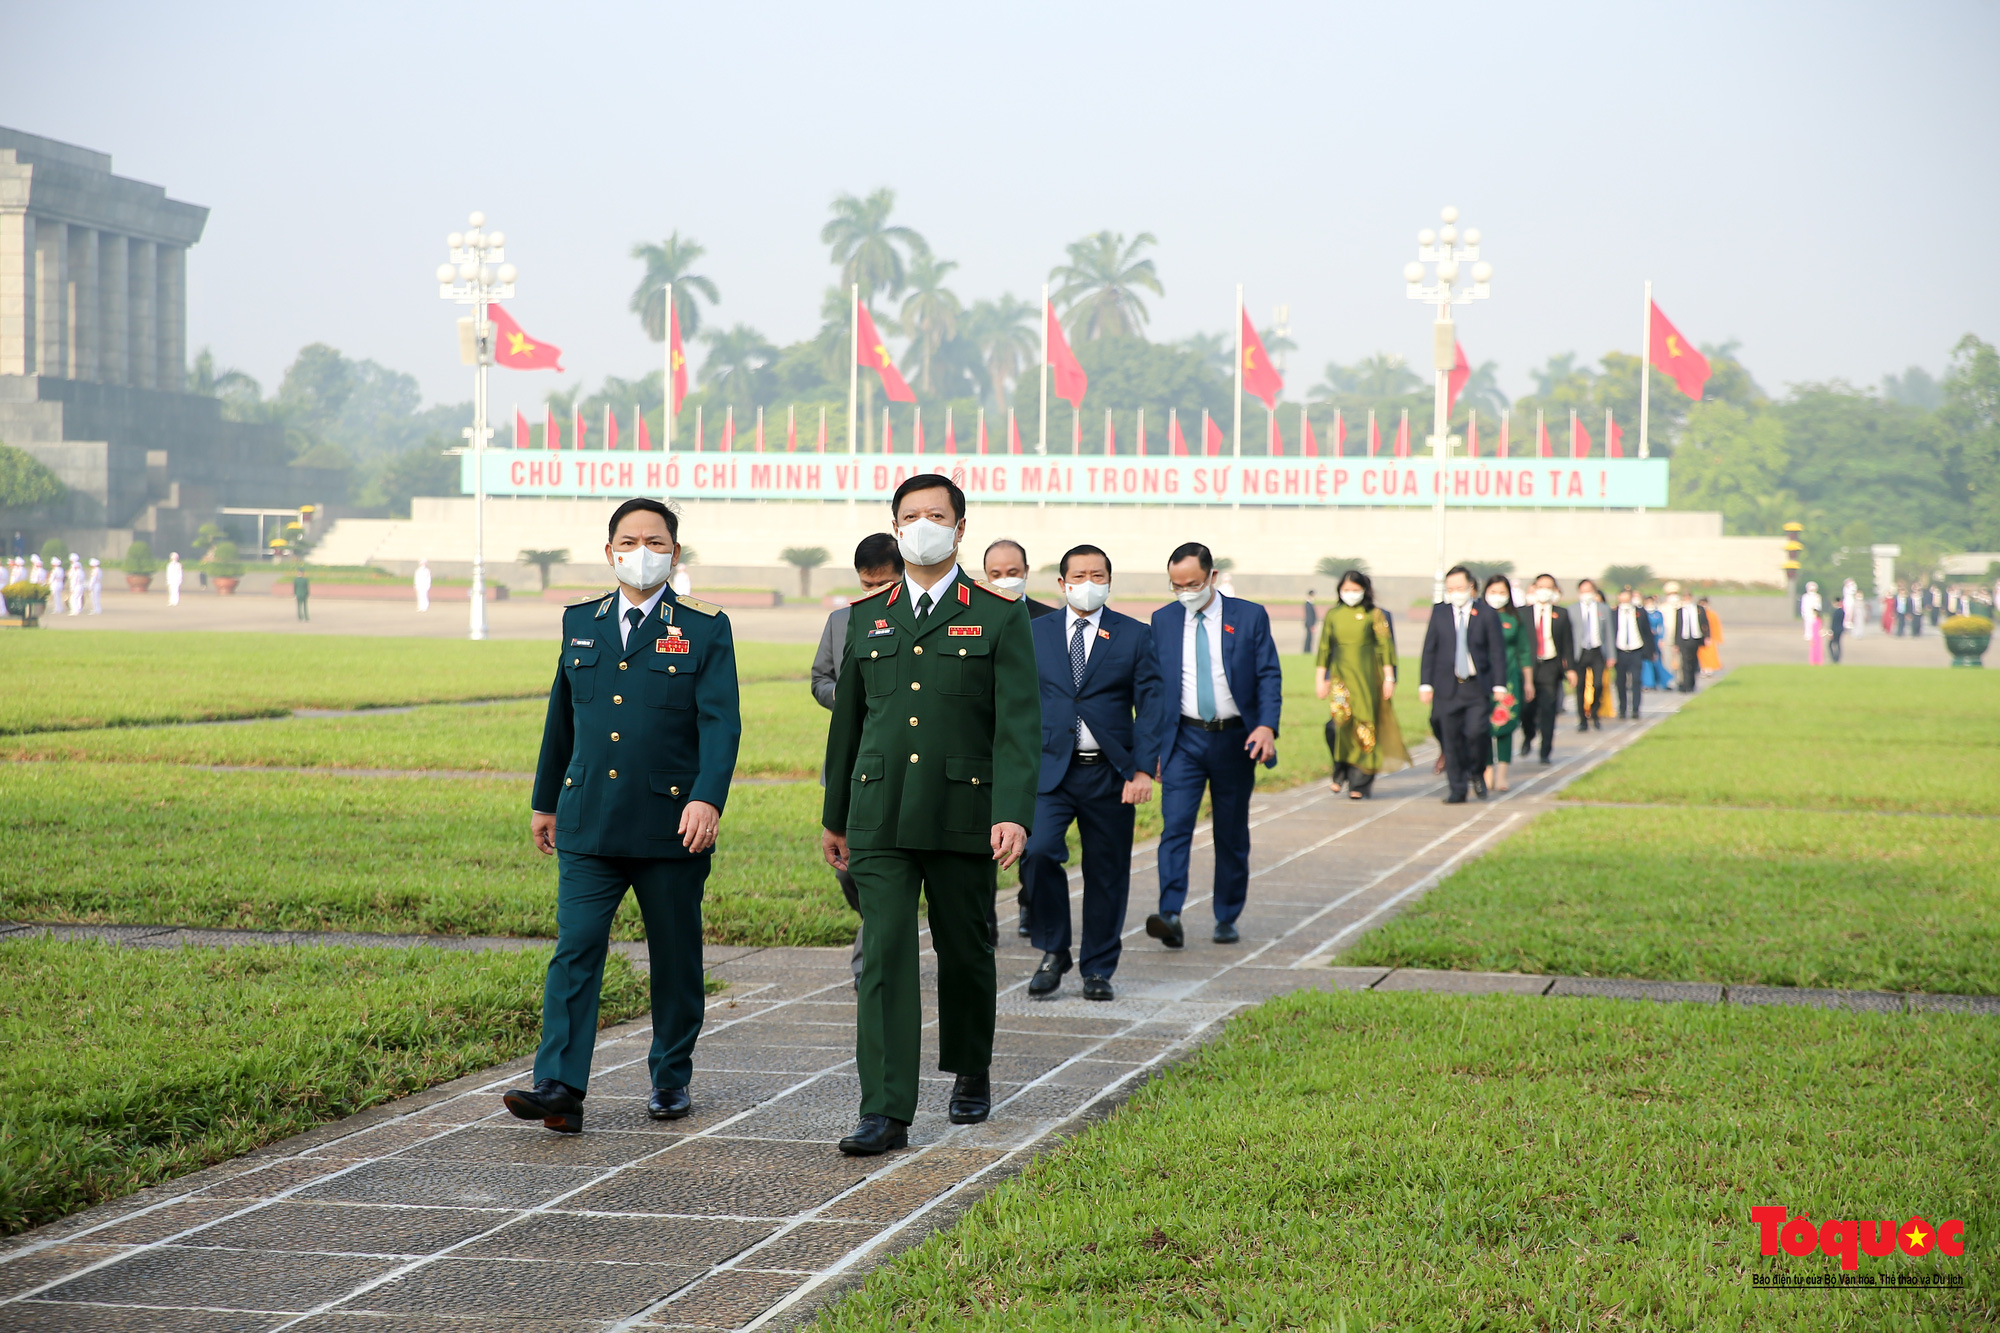 Đại biểu viếng Chủ tịch Hồ Chí Minh trước khai mạc kỳ họp thứ 2 Quốc hội khóa XV - Ảnh 10.